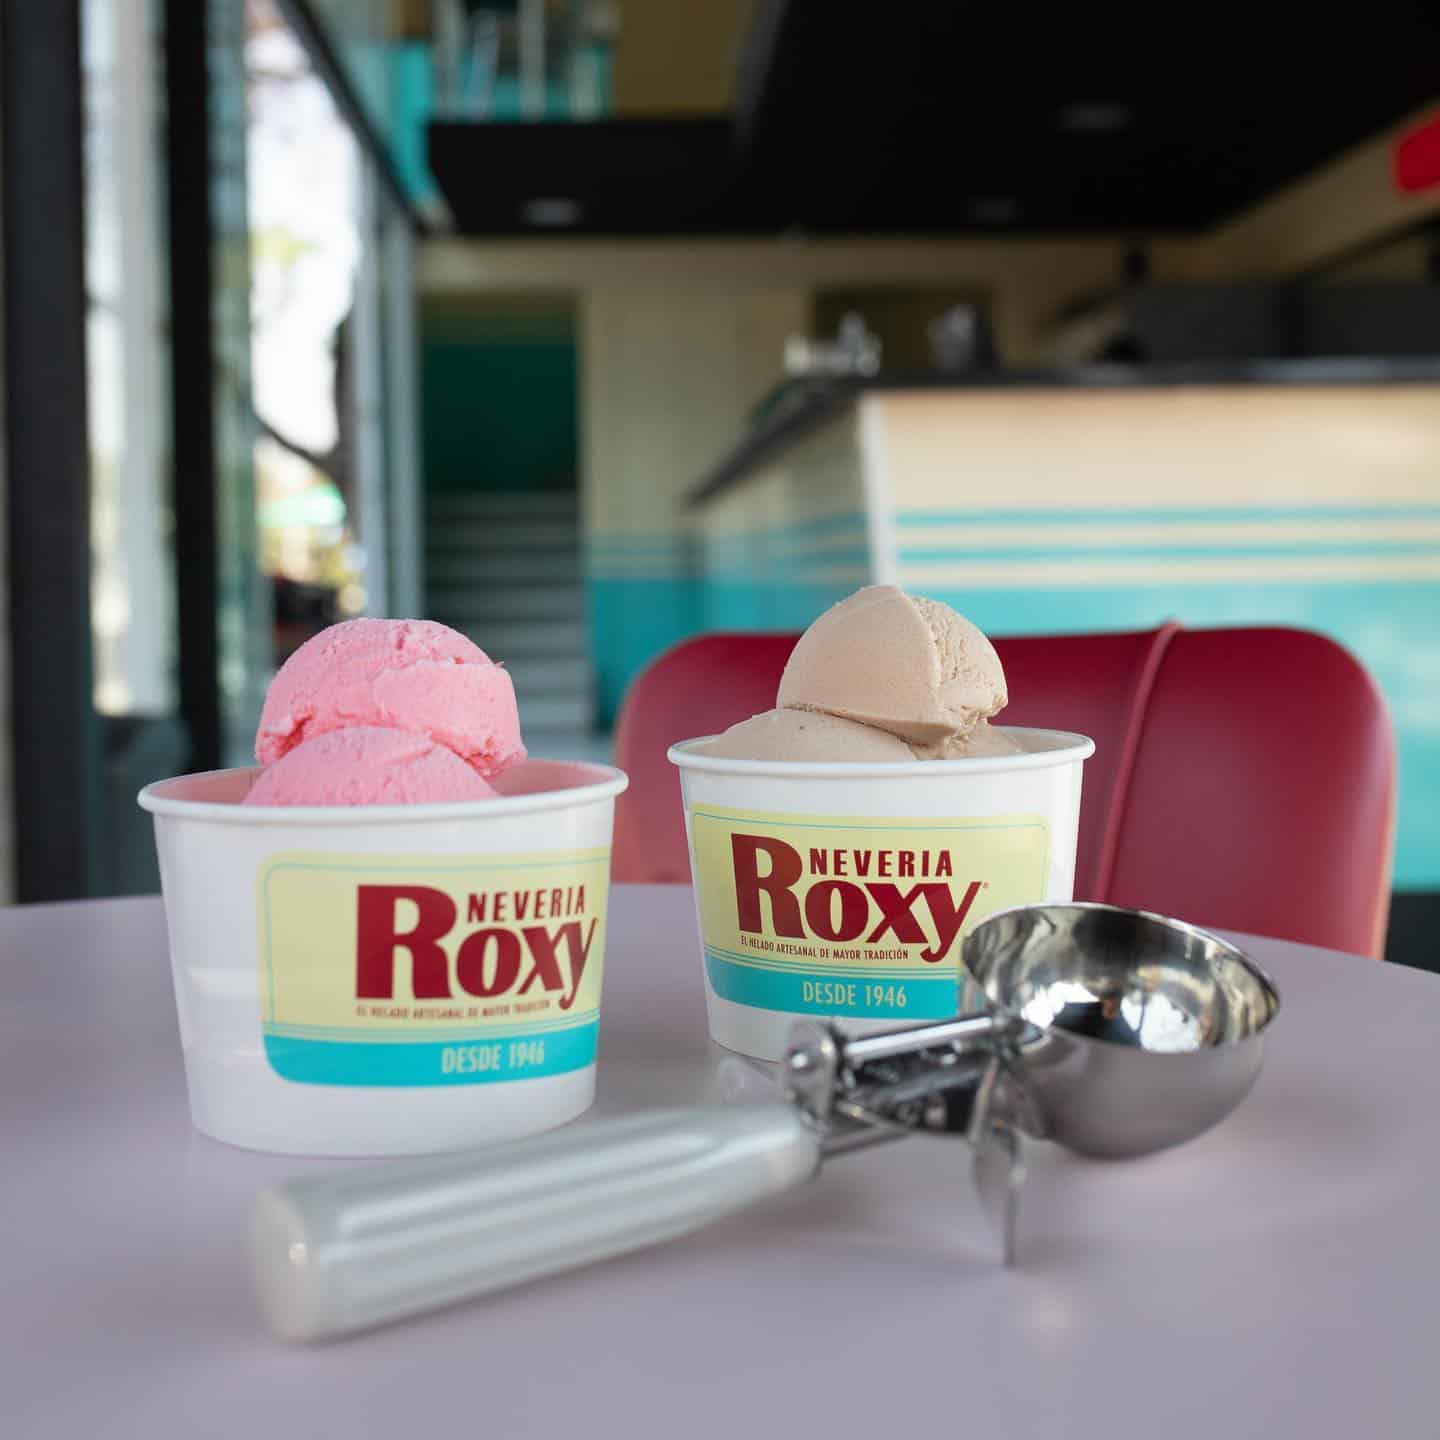 Nevería Roxy, entre las mejores del mundo: Taste Atlas